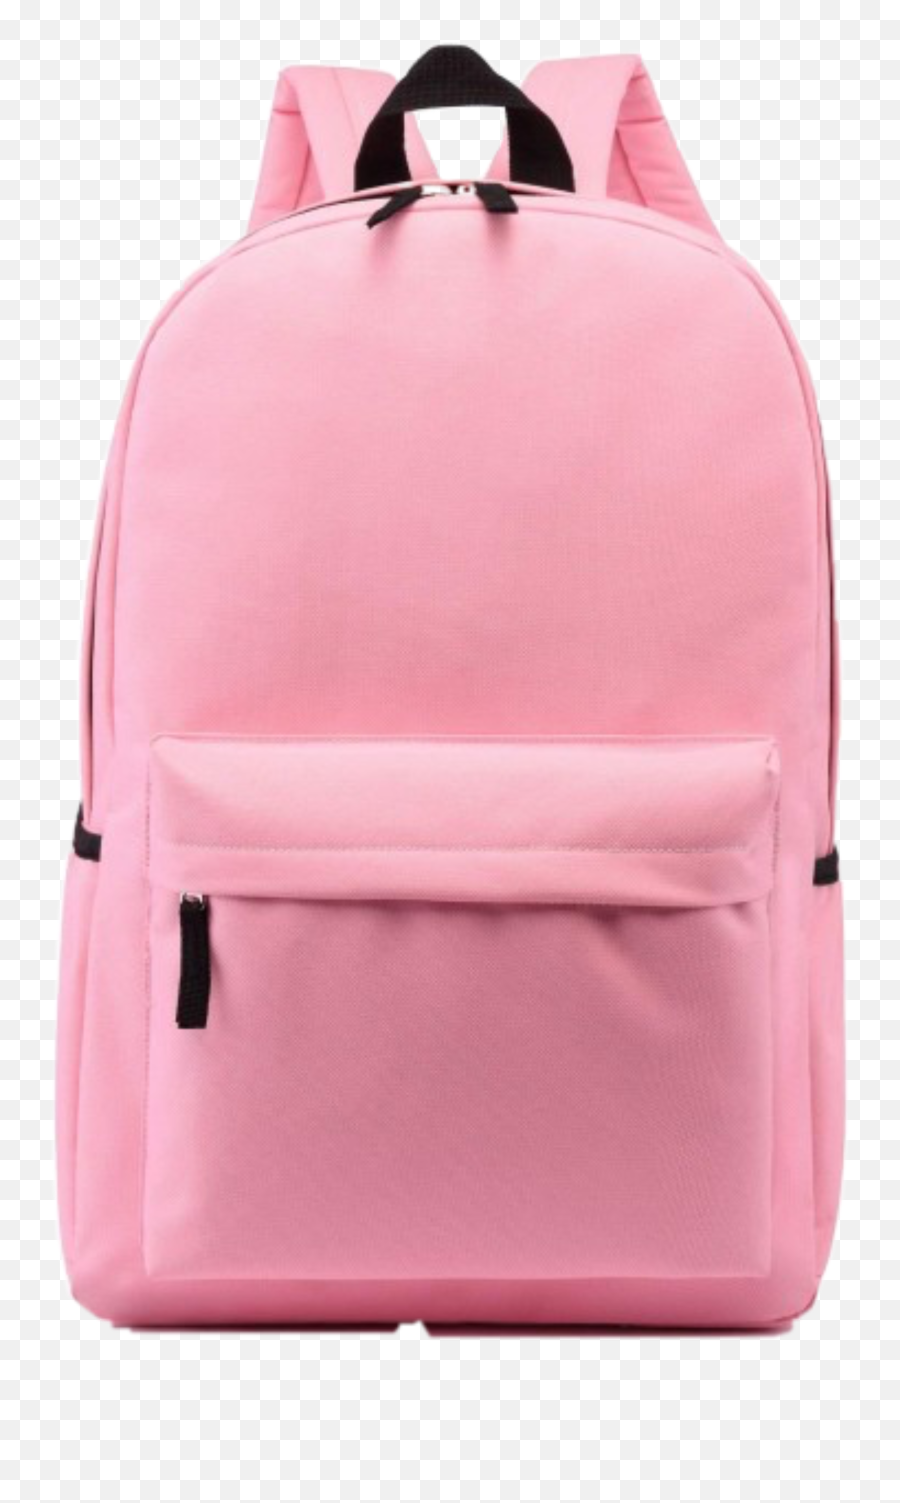 Backpack Pink Aesthetic School Bag - Pink Backpack Transparent Background Emoji,Emoji Backpack